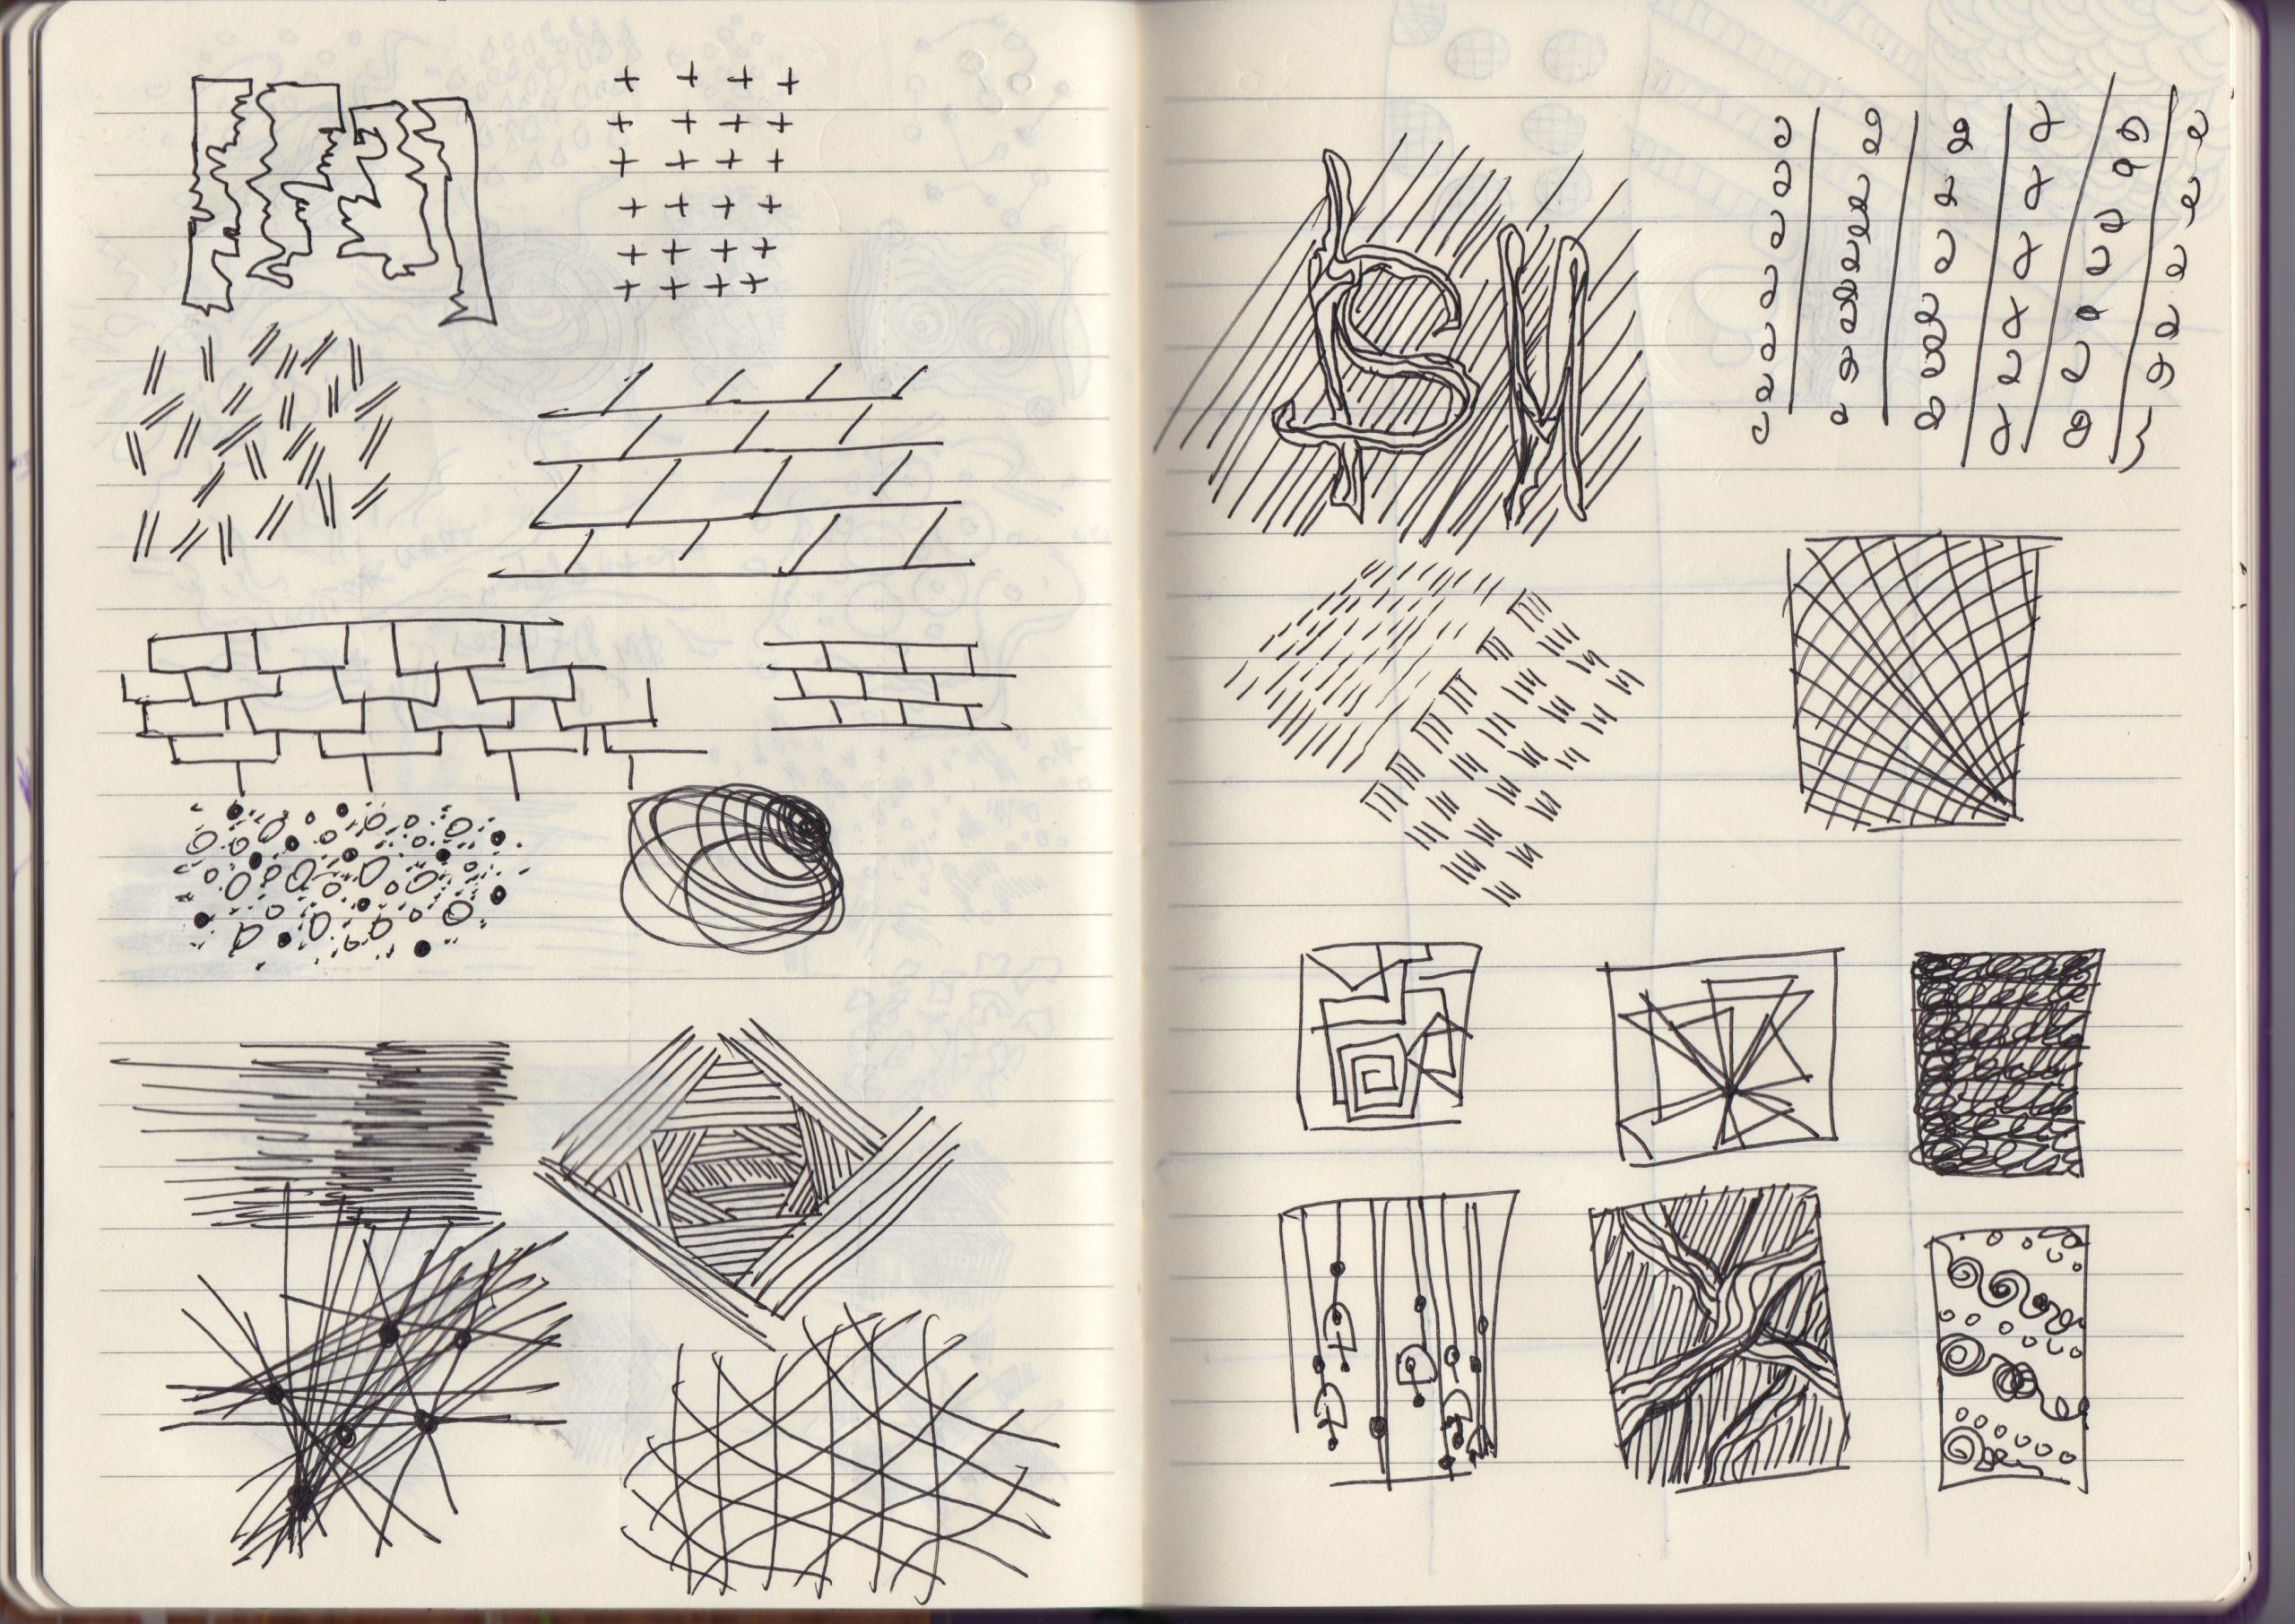 10 way to Improve your sketchbook